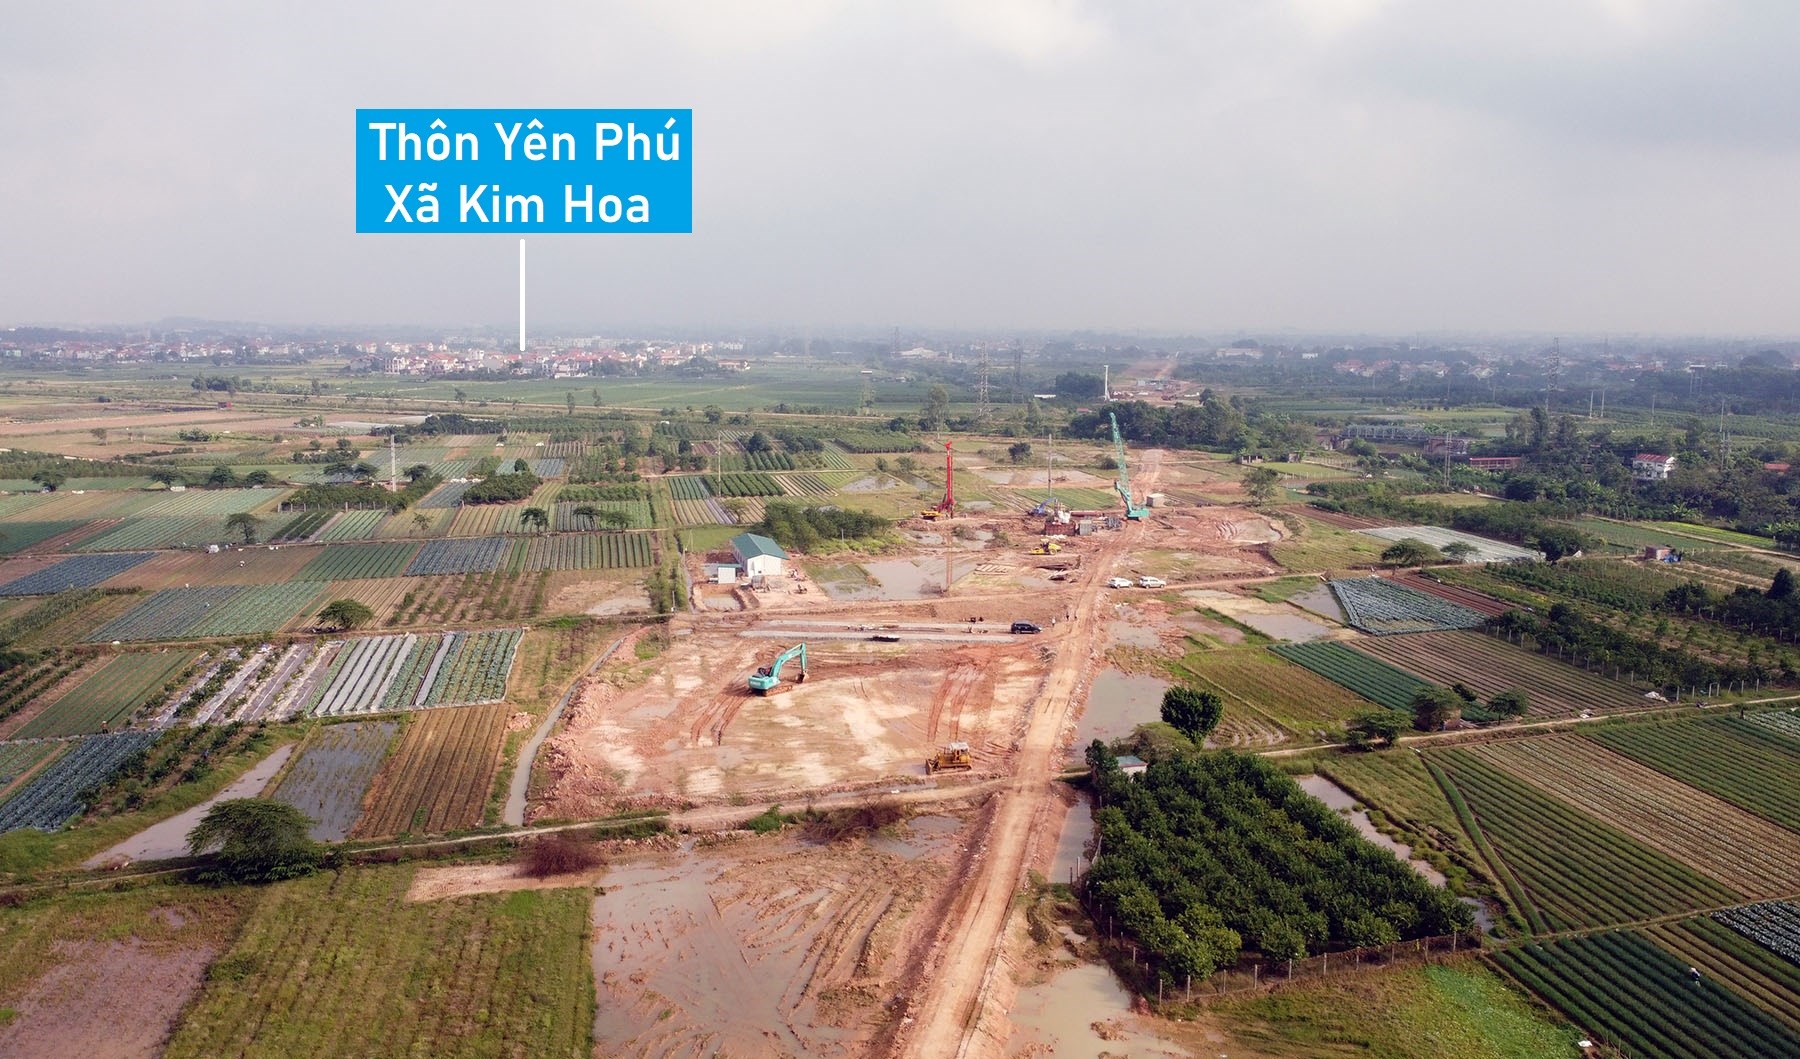 Hình ảnh vành đai 4 qua huyện Mê Linh, Hà Nội đang xây dựng